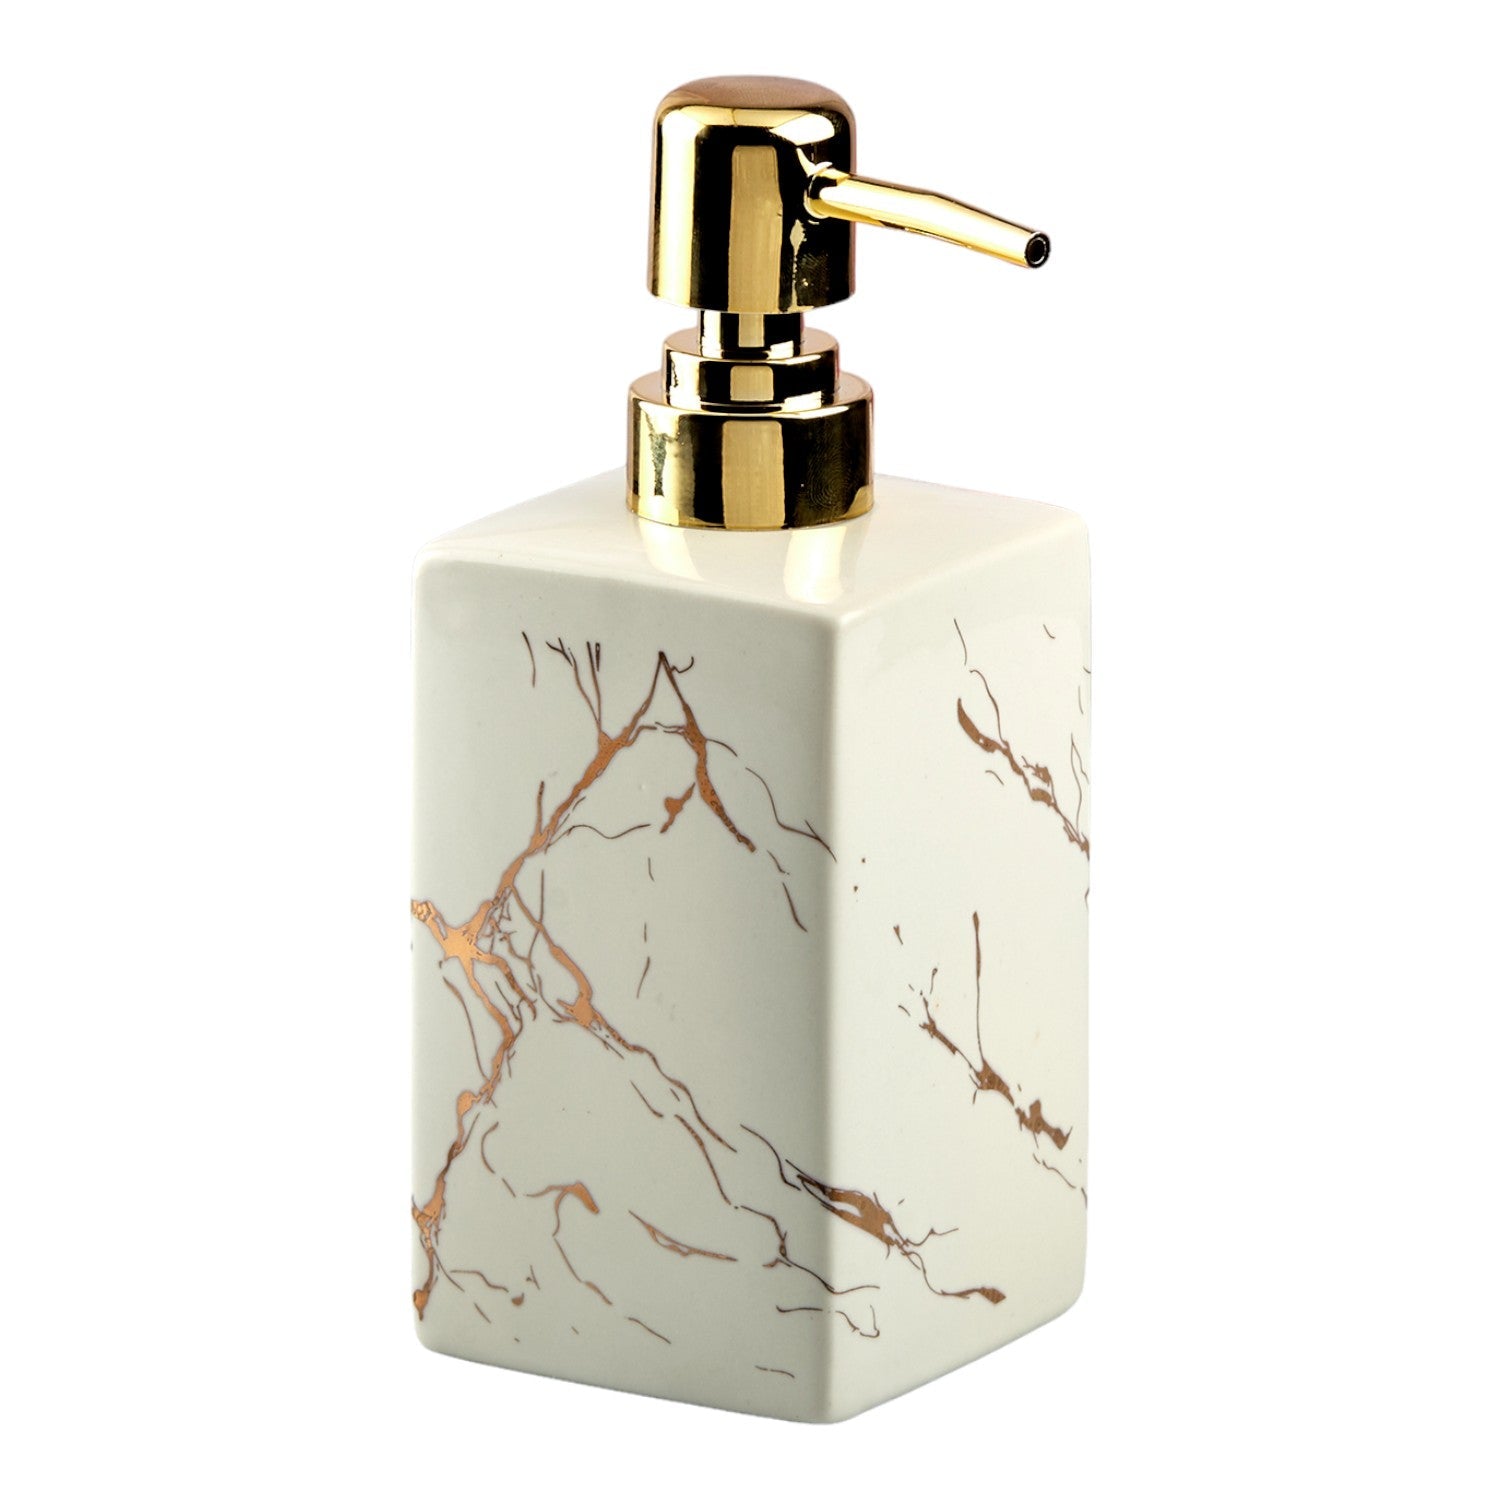 Ceramic Soap Dispenser liquid handwash pump for Bathroom, Set of 1, White (10620)